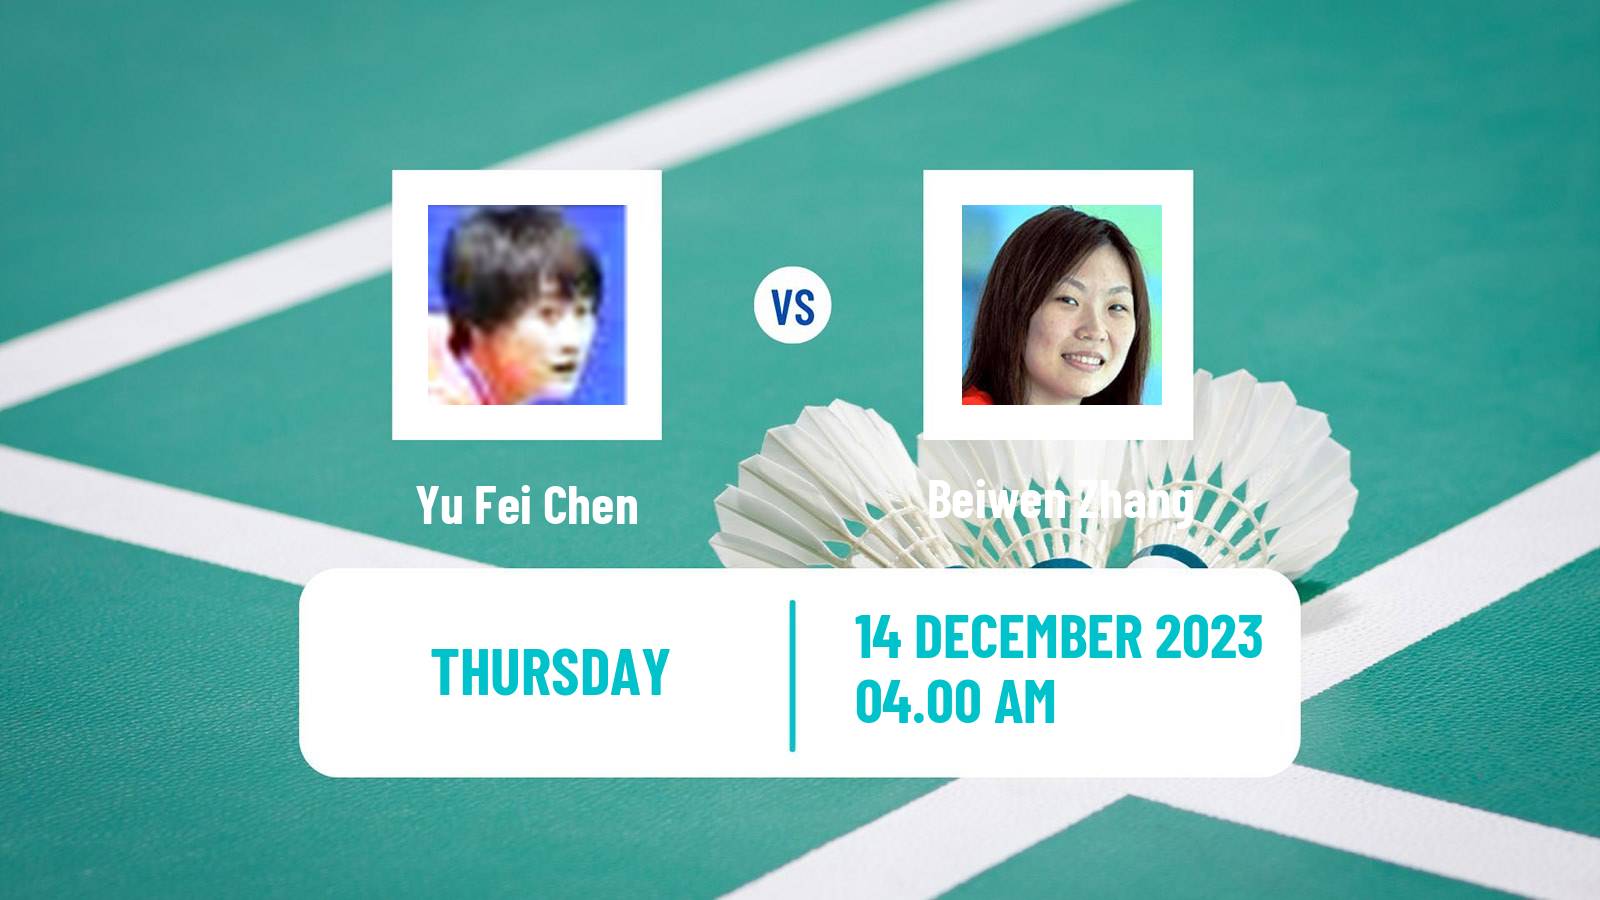 Badminton BWF World Tour World Tour Finals Women Yu Fei Chen - Beiwen Zhang